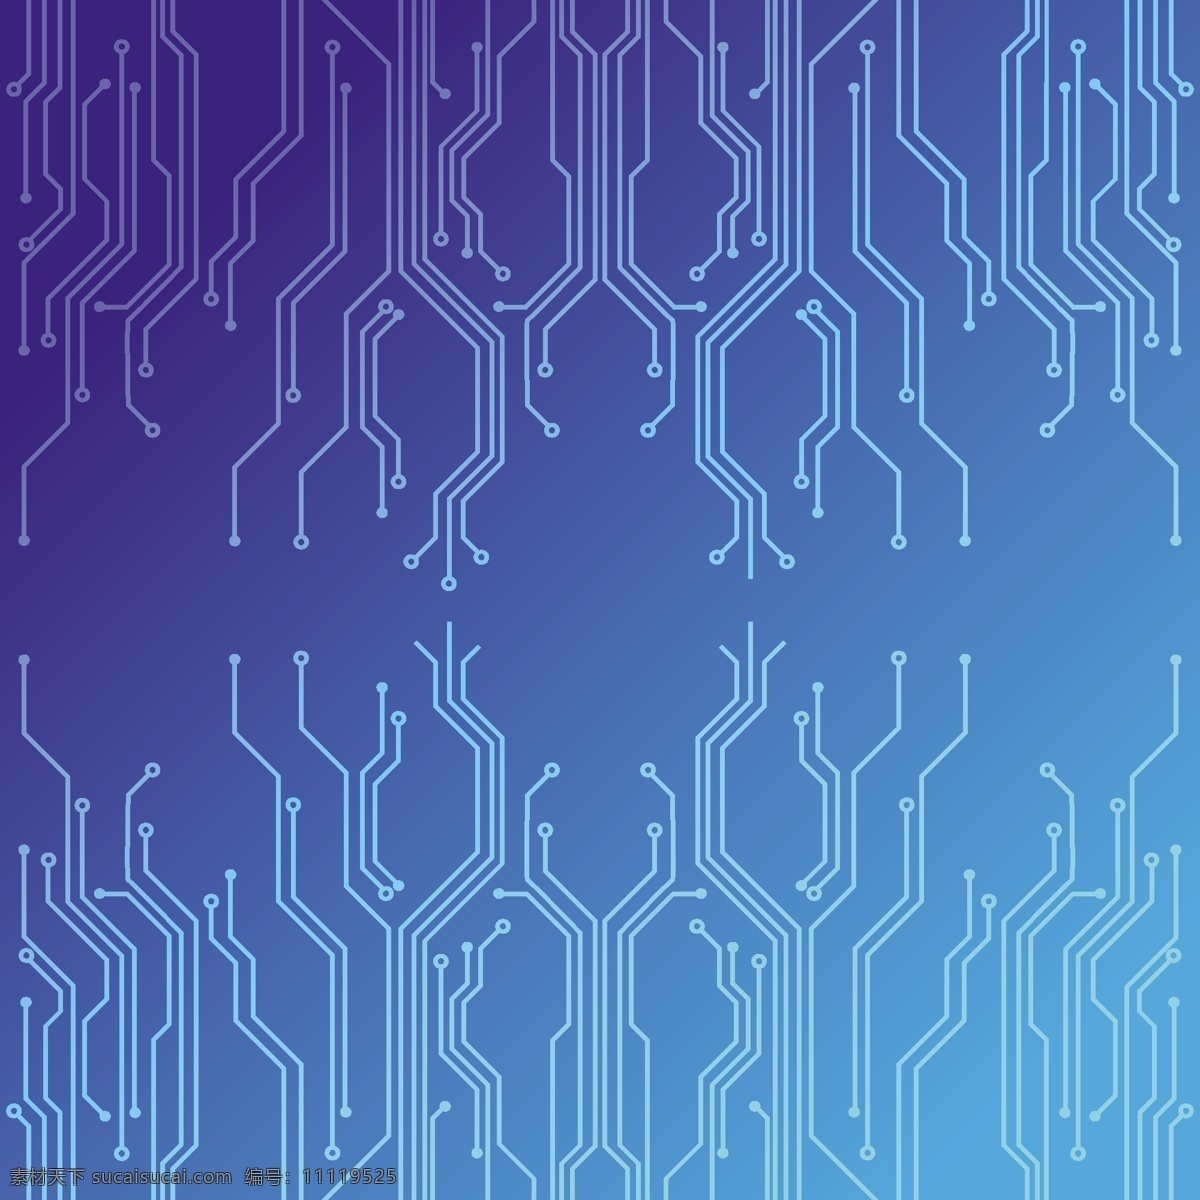 电子电路背景 抽象 背景 芯片 电路 通信 计算机 计算 概念 连接 科技背景 底纹边框 背景底纹